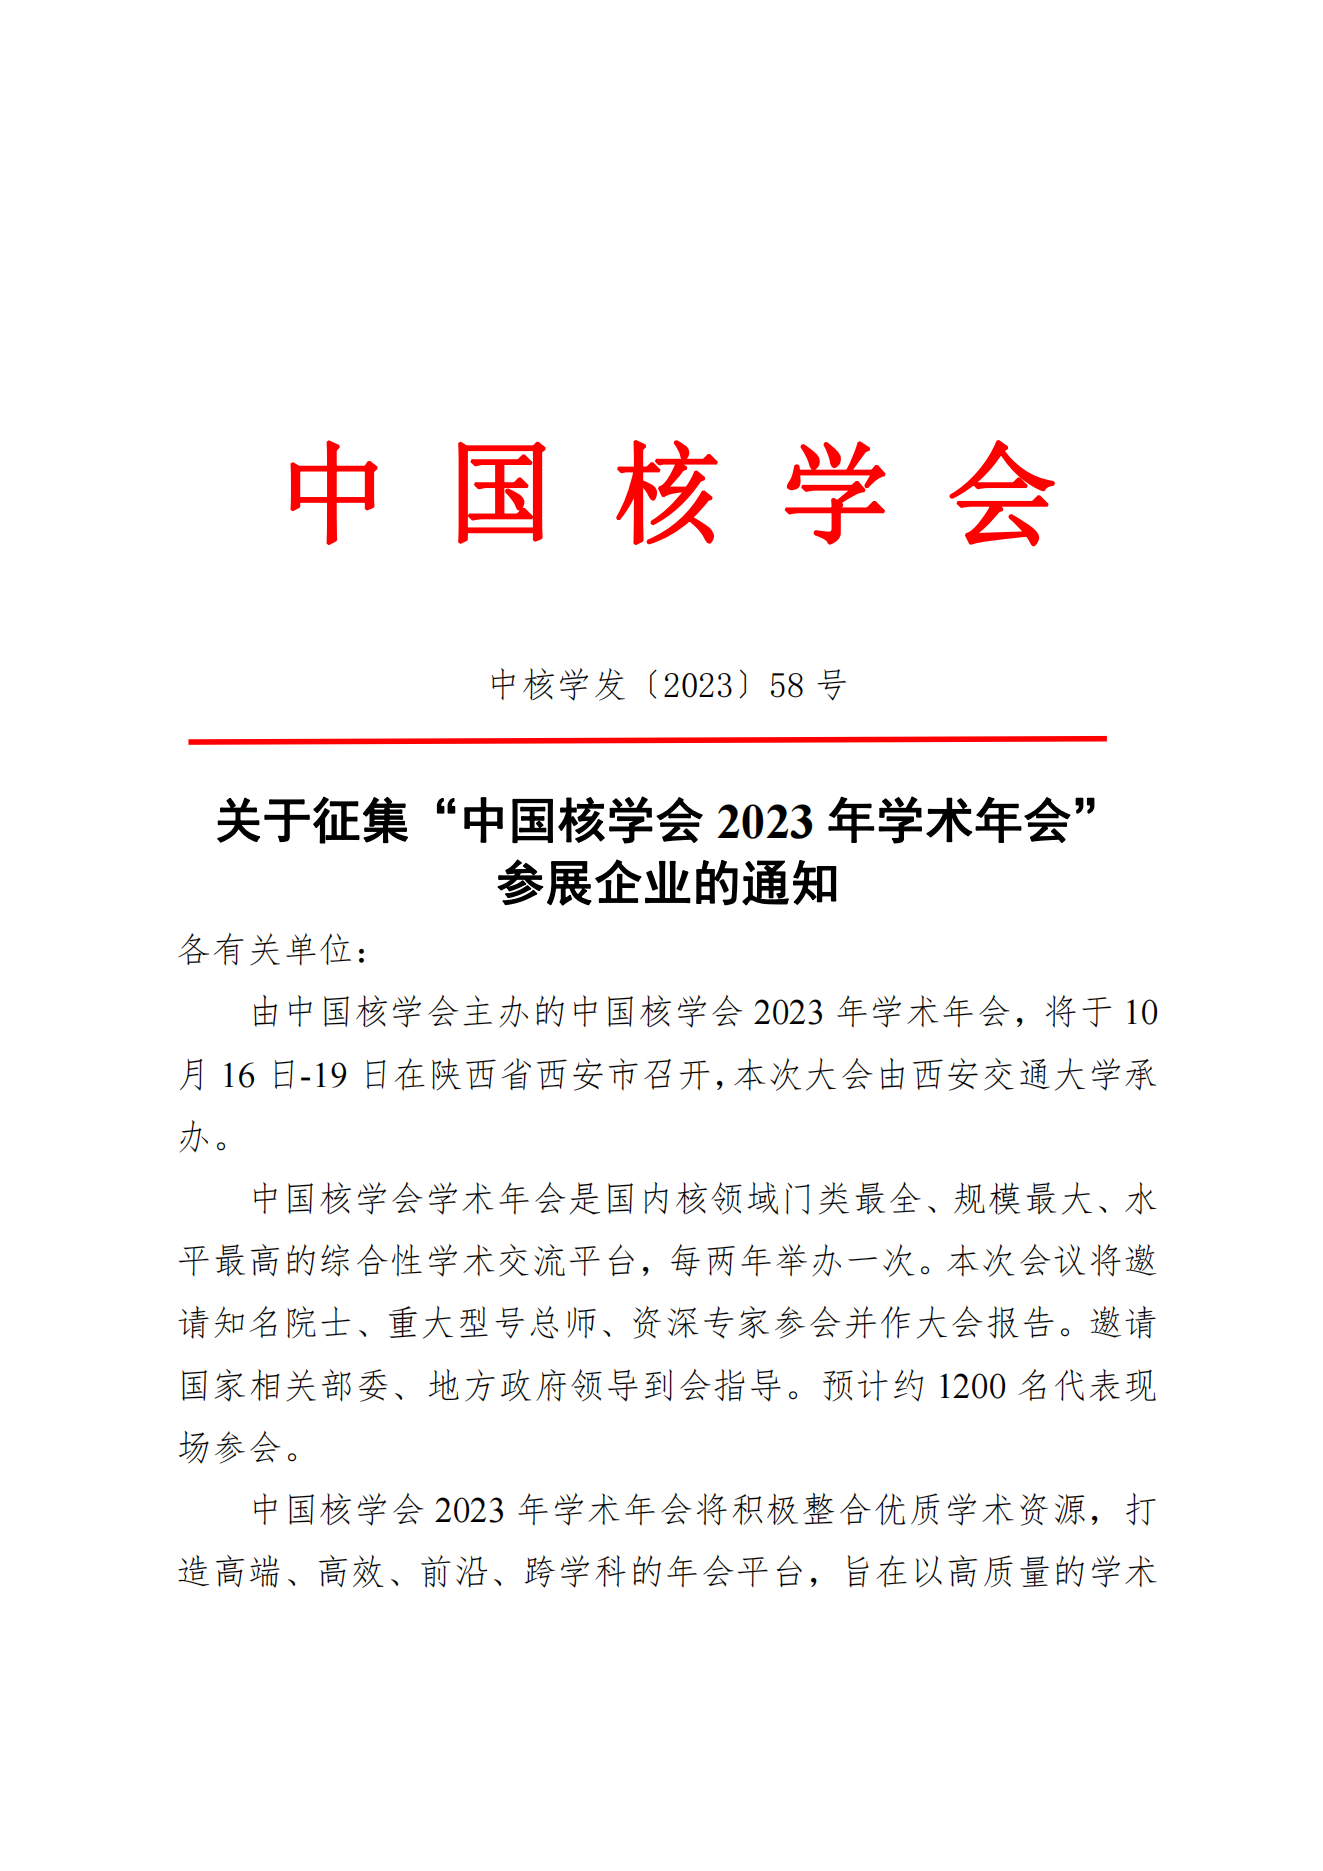 关于征集“中国核学会2023年学术年会”参展企业的通知_00.png